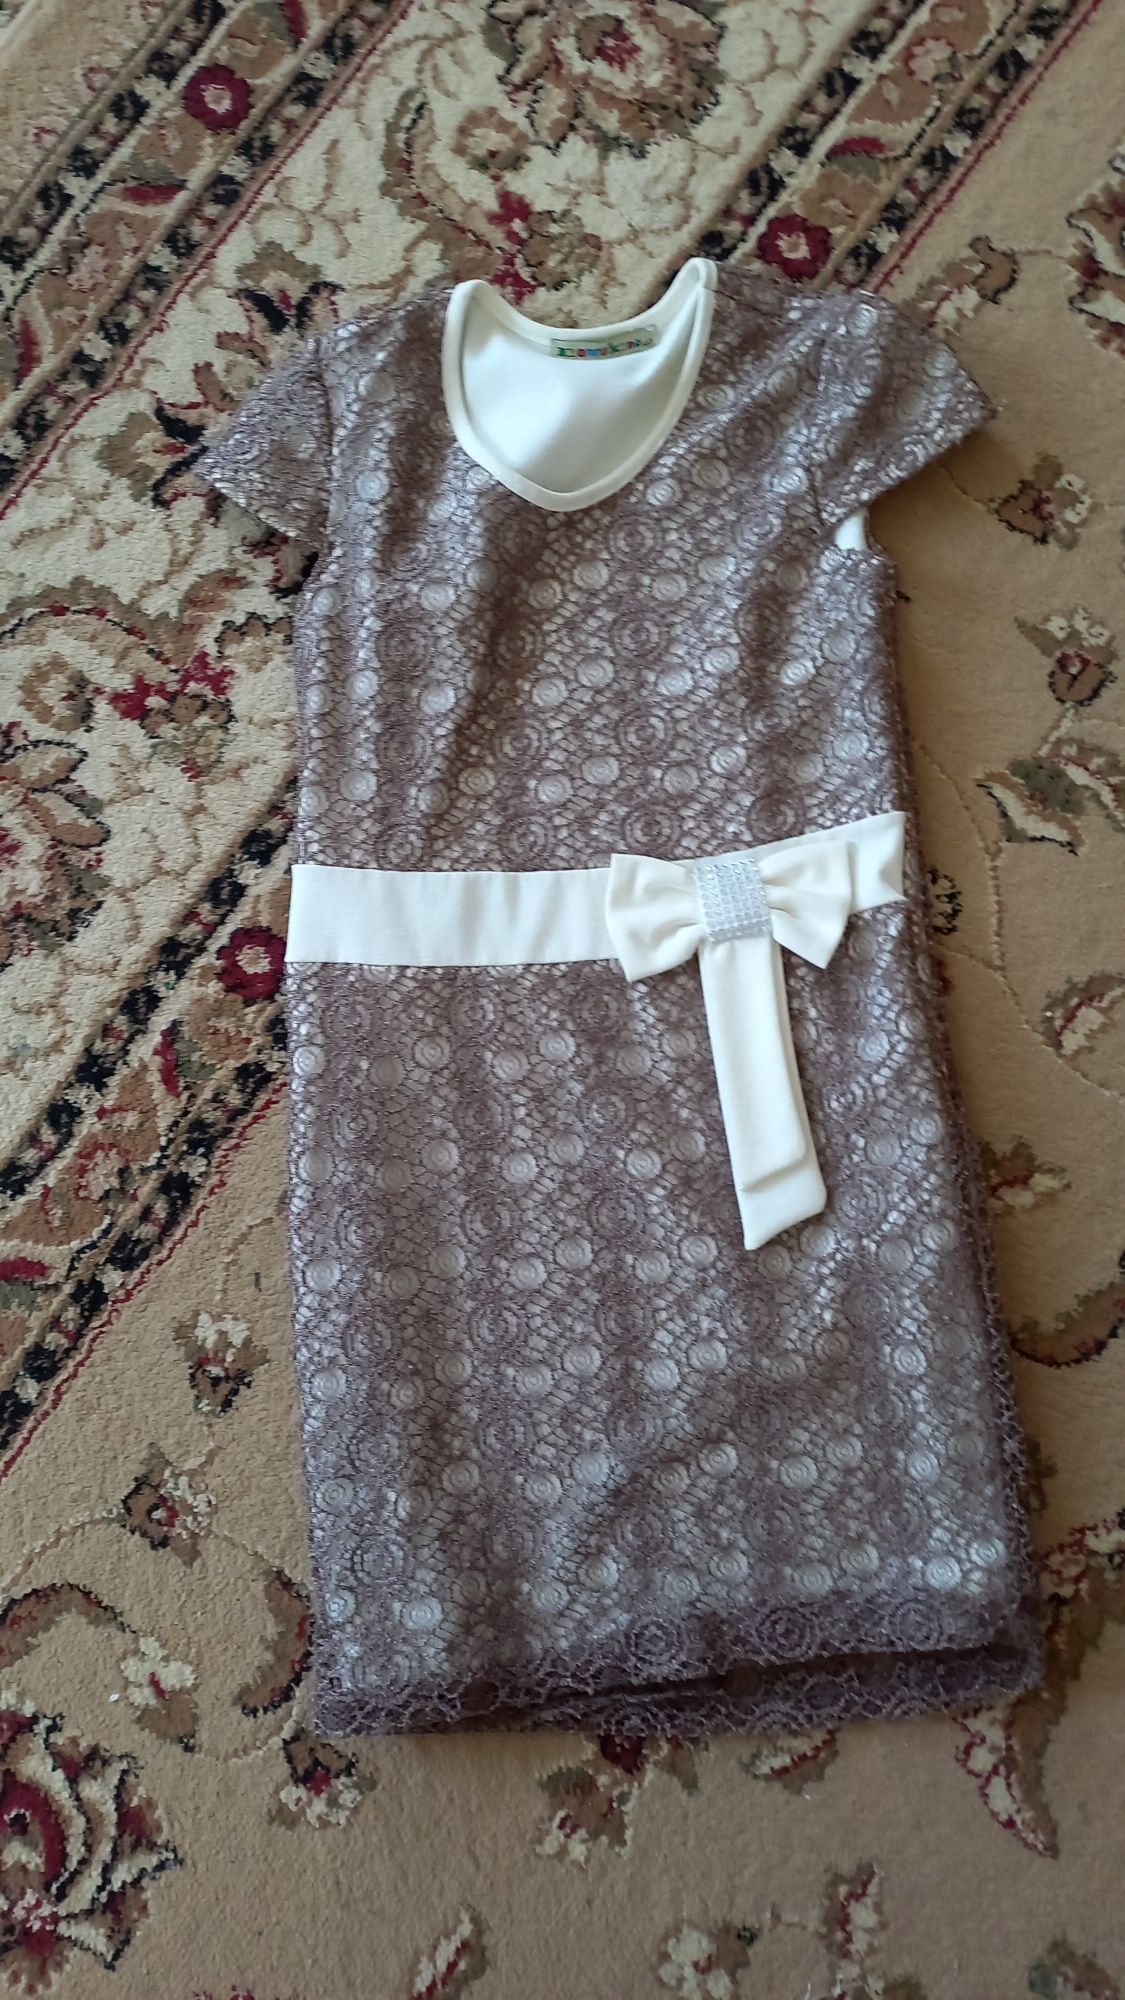 Платье на девочку 6-7 лет